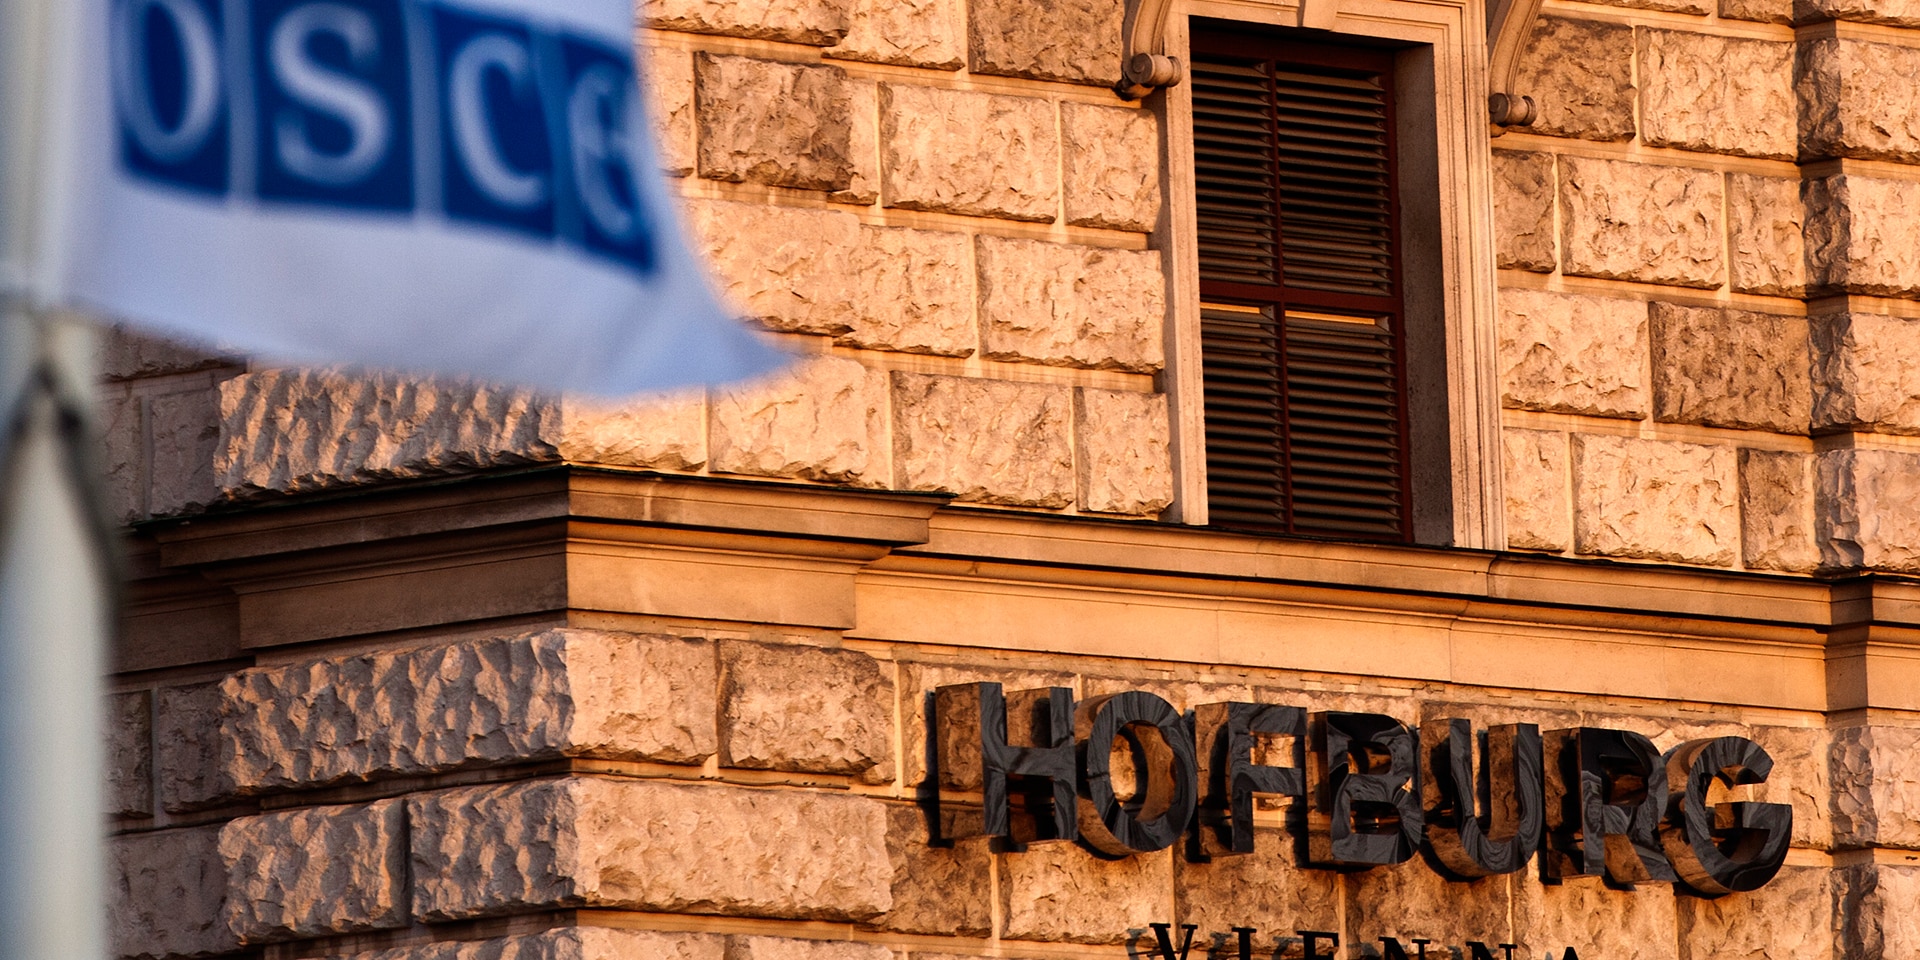  La Hofburg de Vienne: siège du Conseil permanent, principal organe de décision de l’Organisation pour la sécurité et la coopération en Europe (OSCE).